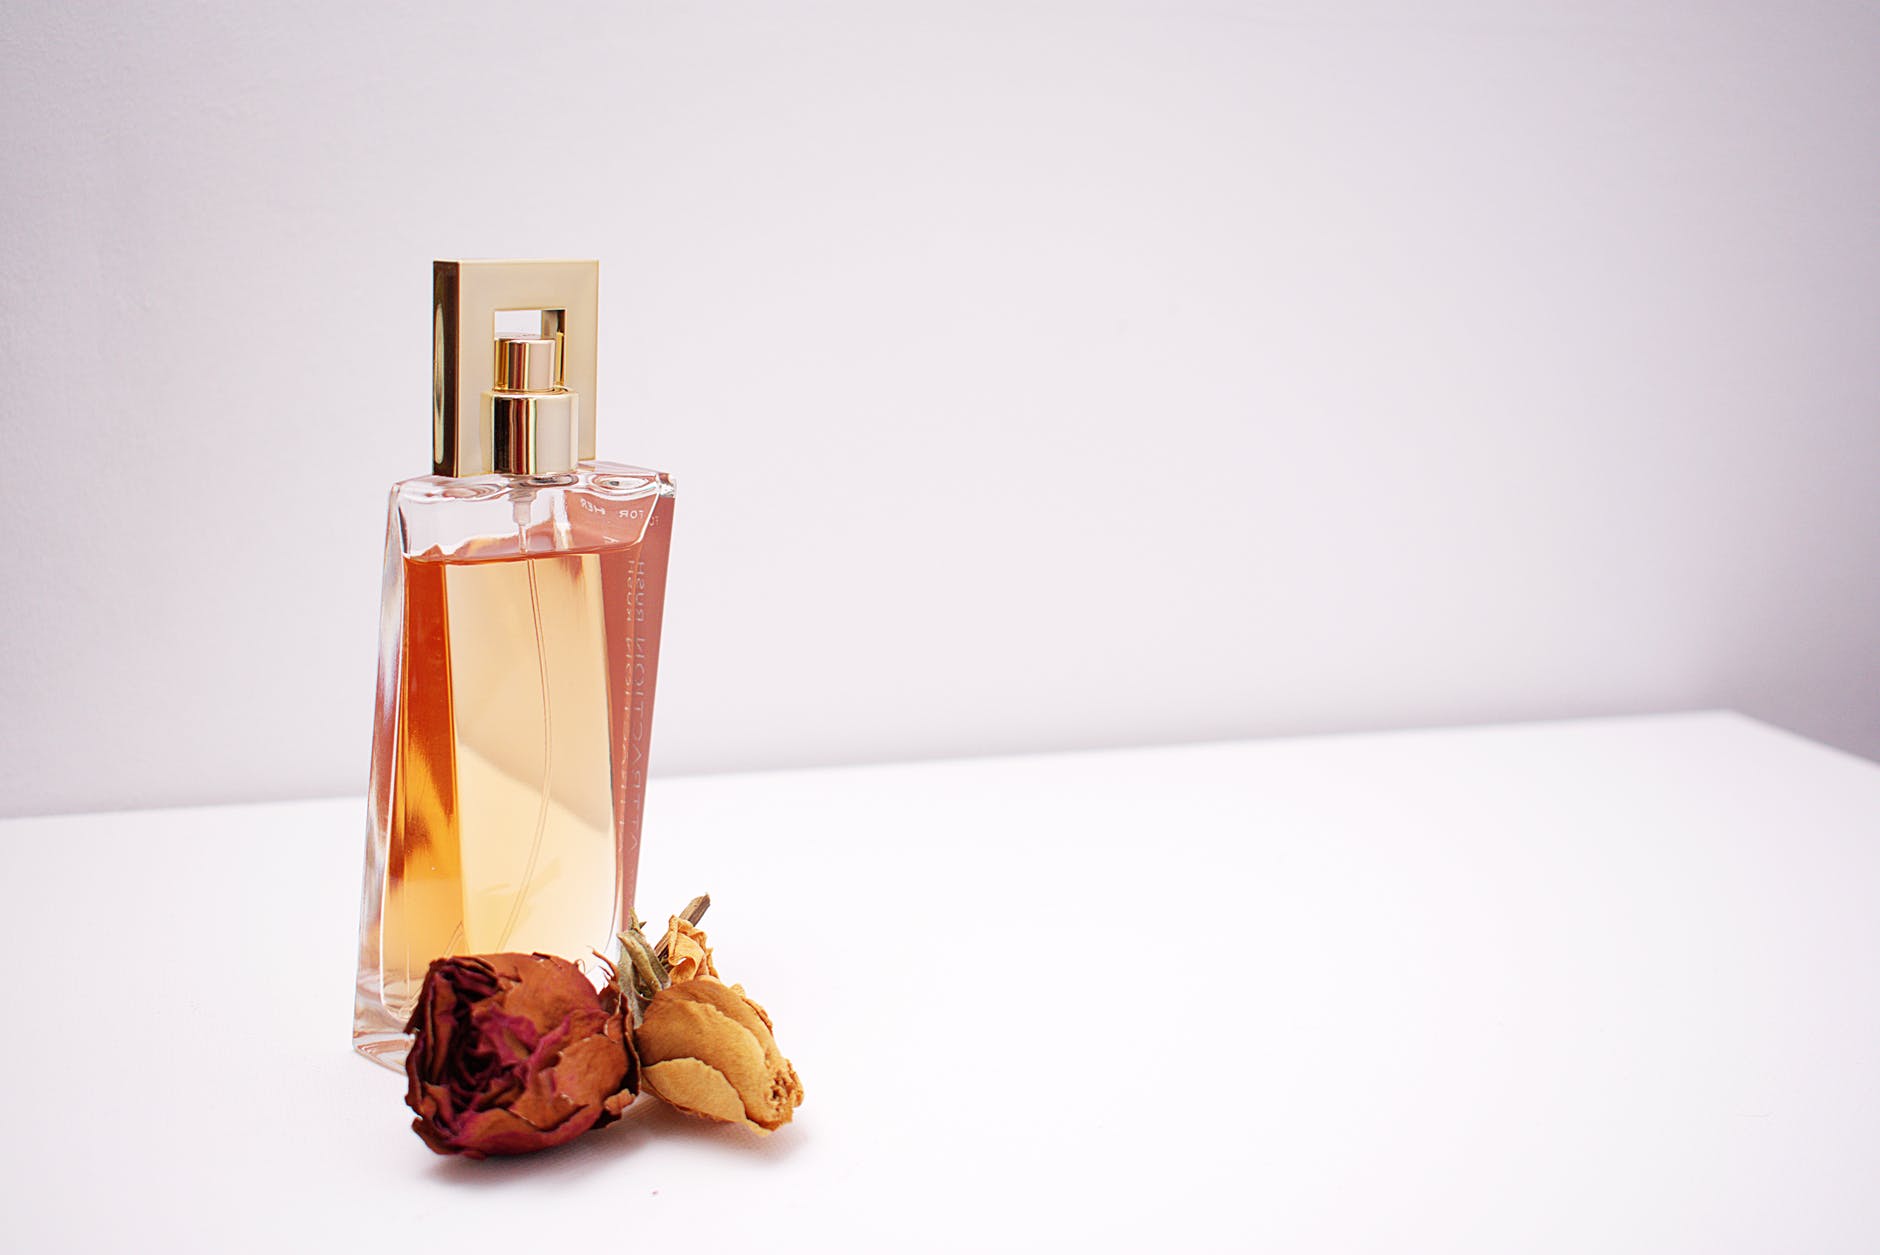 Le parfum boisé, un mélange subtile de palettes olfactives à explorer !